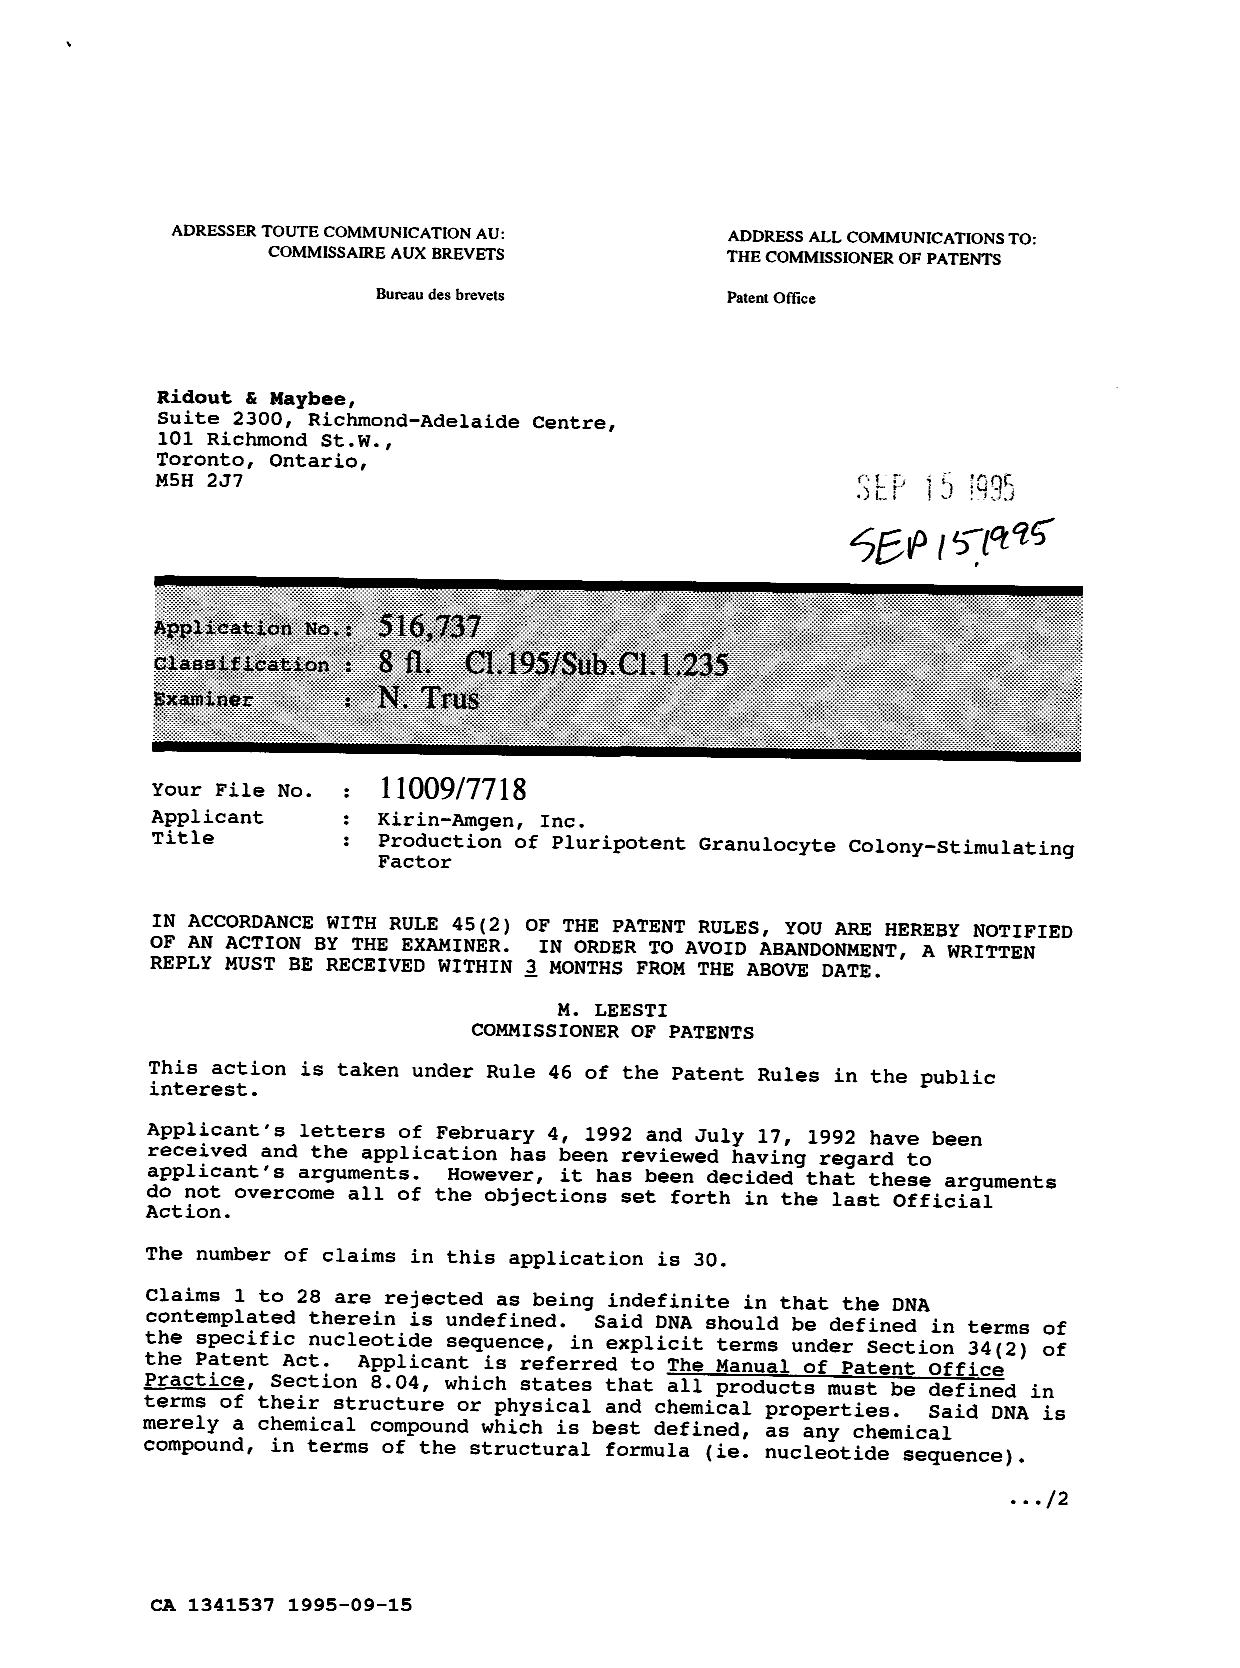 Document de brevet canadien 1341537. Poursuite-Amendment 19941215. Image 1 de 2